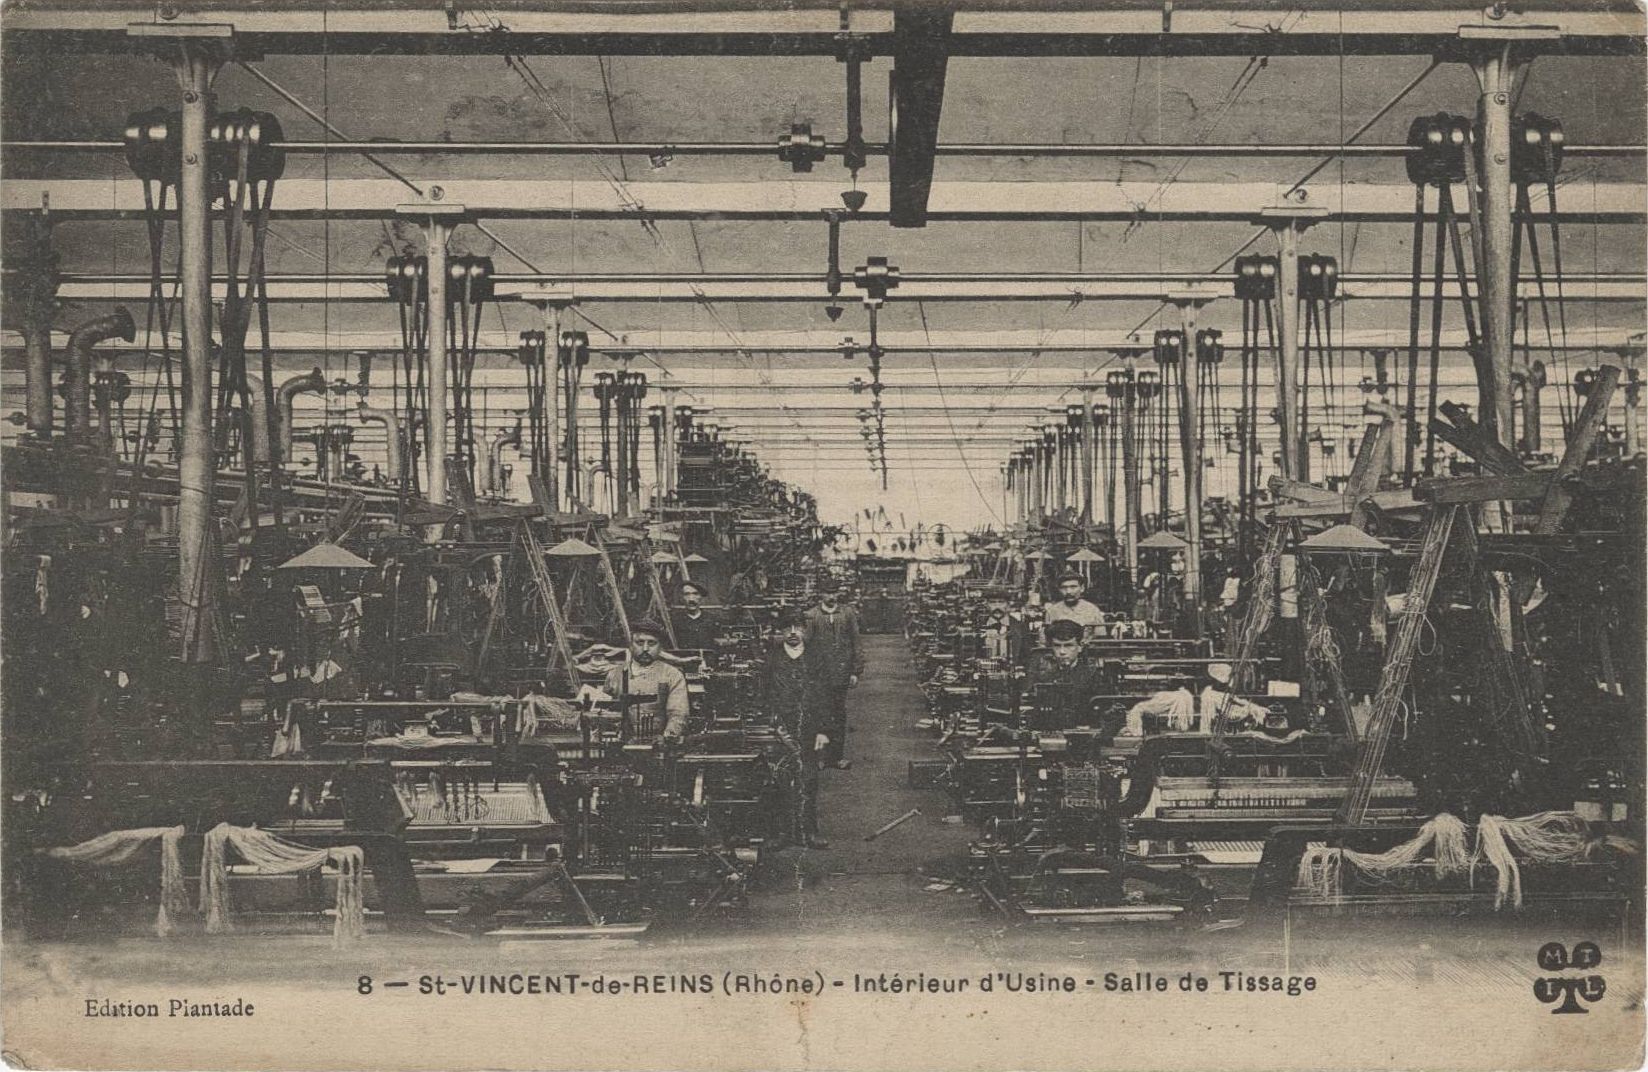 Salle de tissage de l'usine de Saint-Vincent-de-Reins : carte postale NB (vers 1910, cote : 4FI/4187)